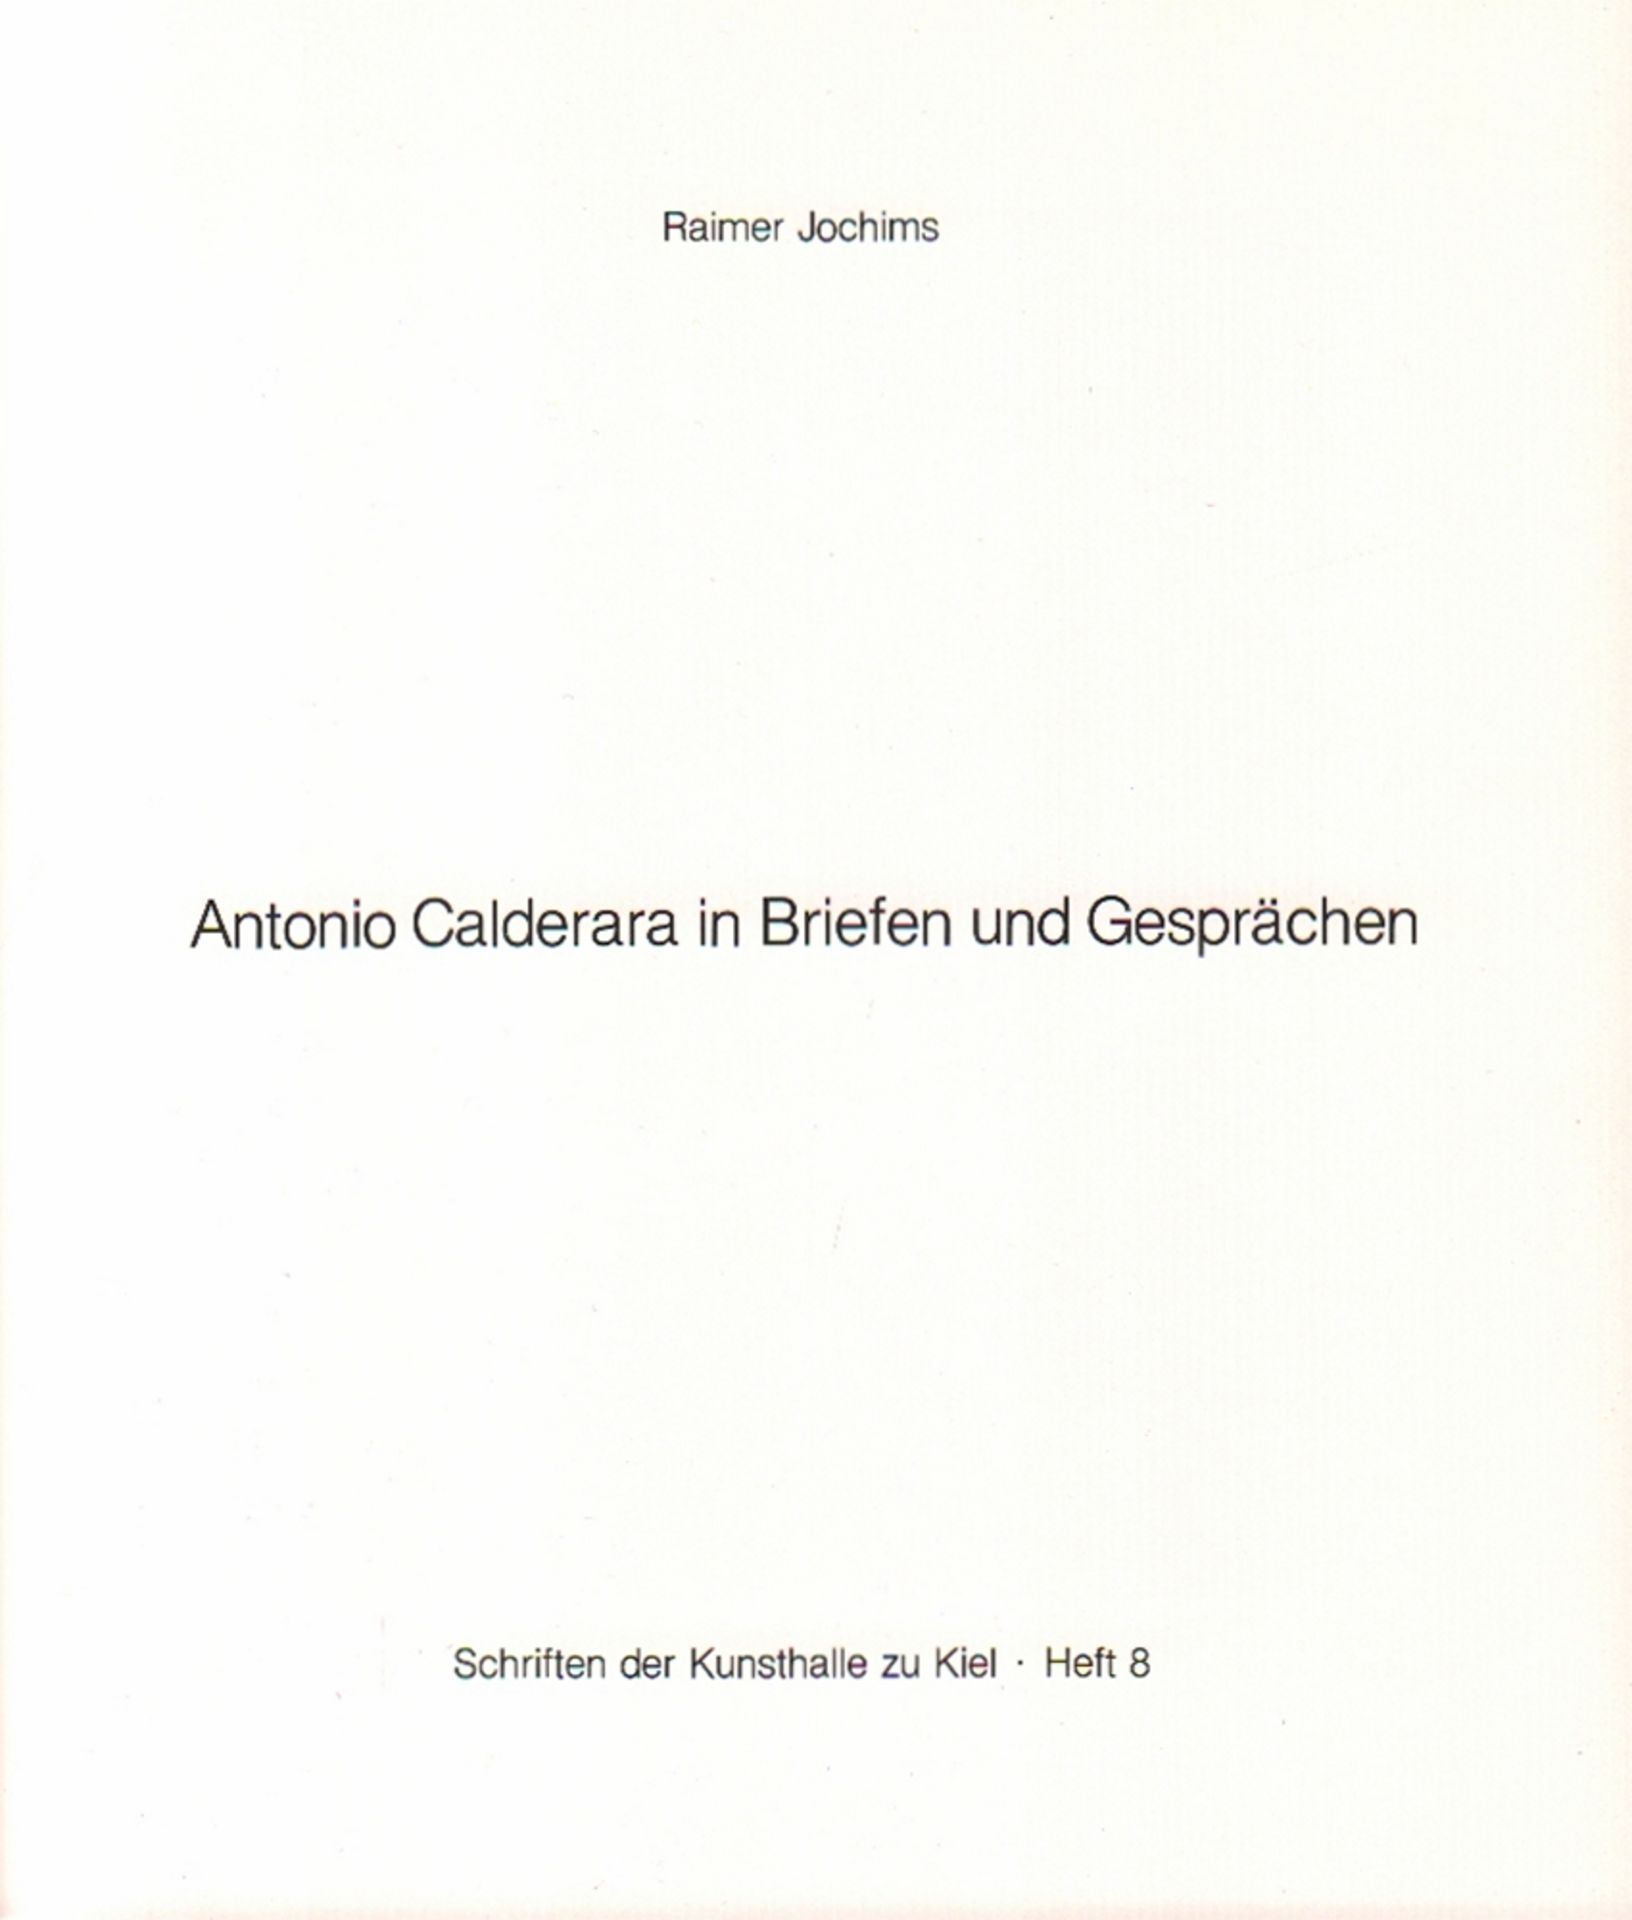 Kunst. Calderara. Jochims, Rainer. AntonioCalderara in Briefen und Gesprächen. 1982. 8°. Mit einigen